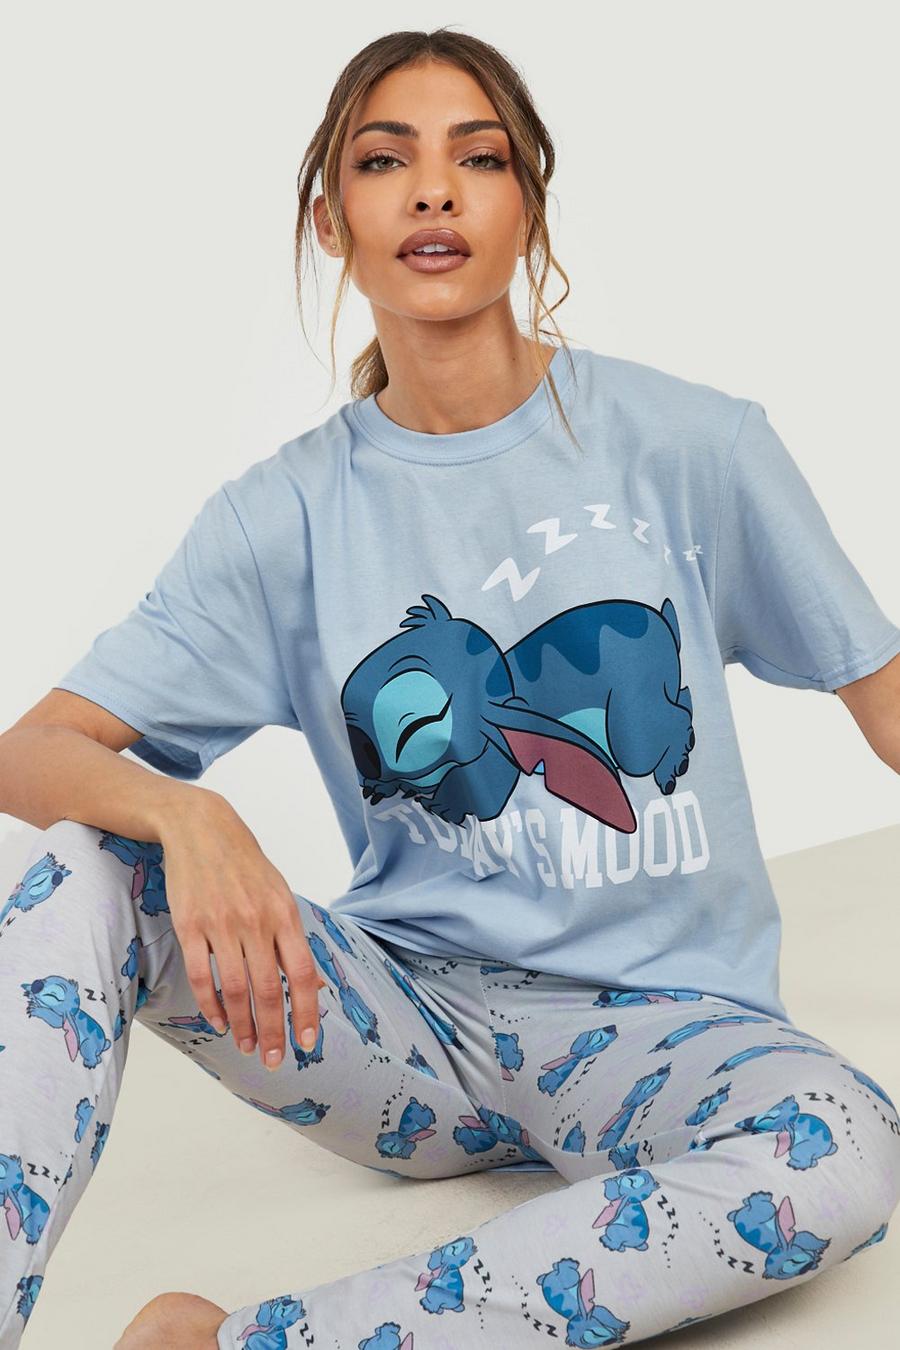 Pyjama Disney à imprimé Lilo & Stitch avec t-shirt et legging